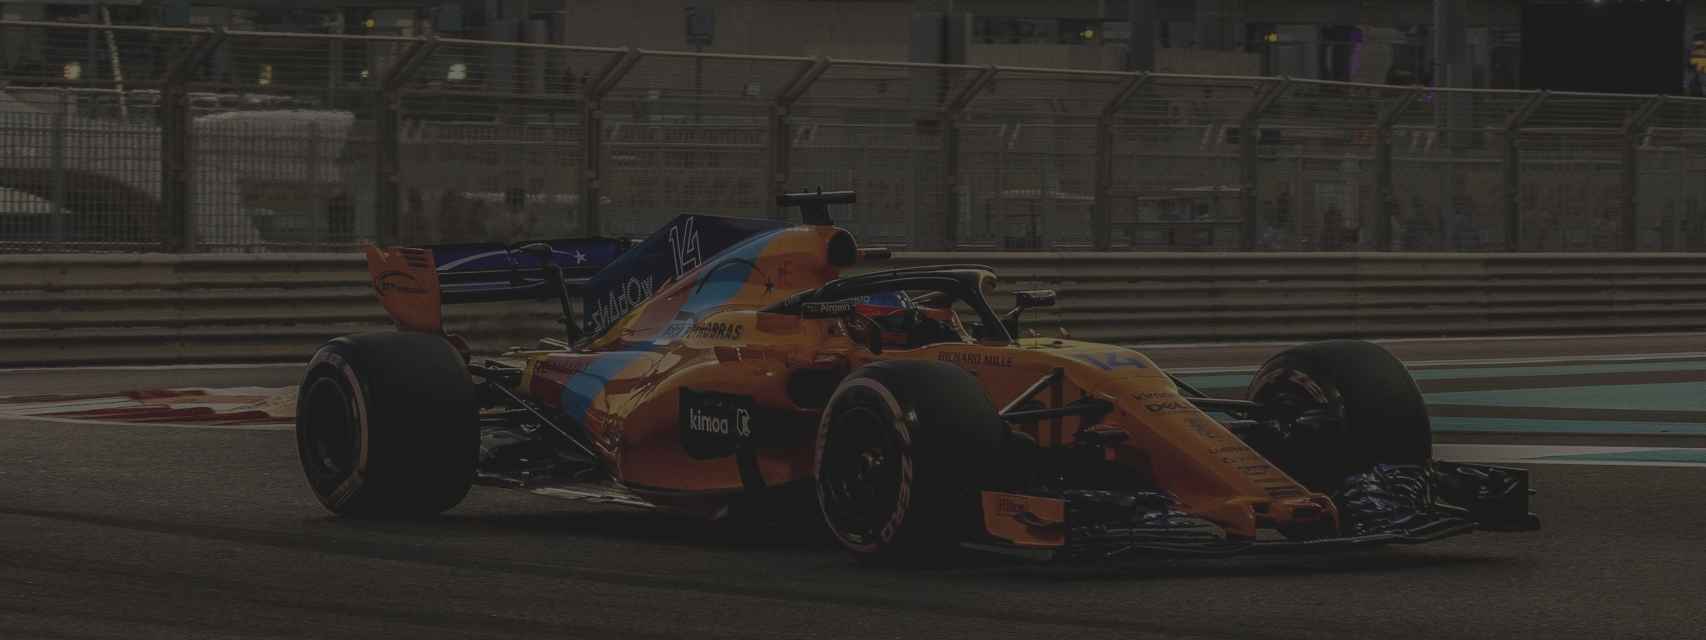 Fernando Alonso, durante el GP de Abu Dhabi